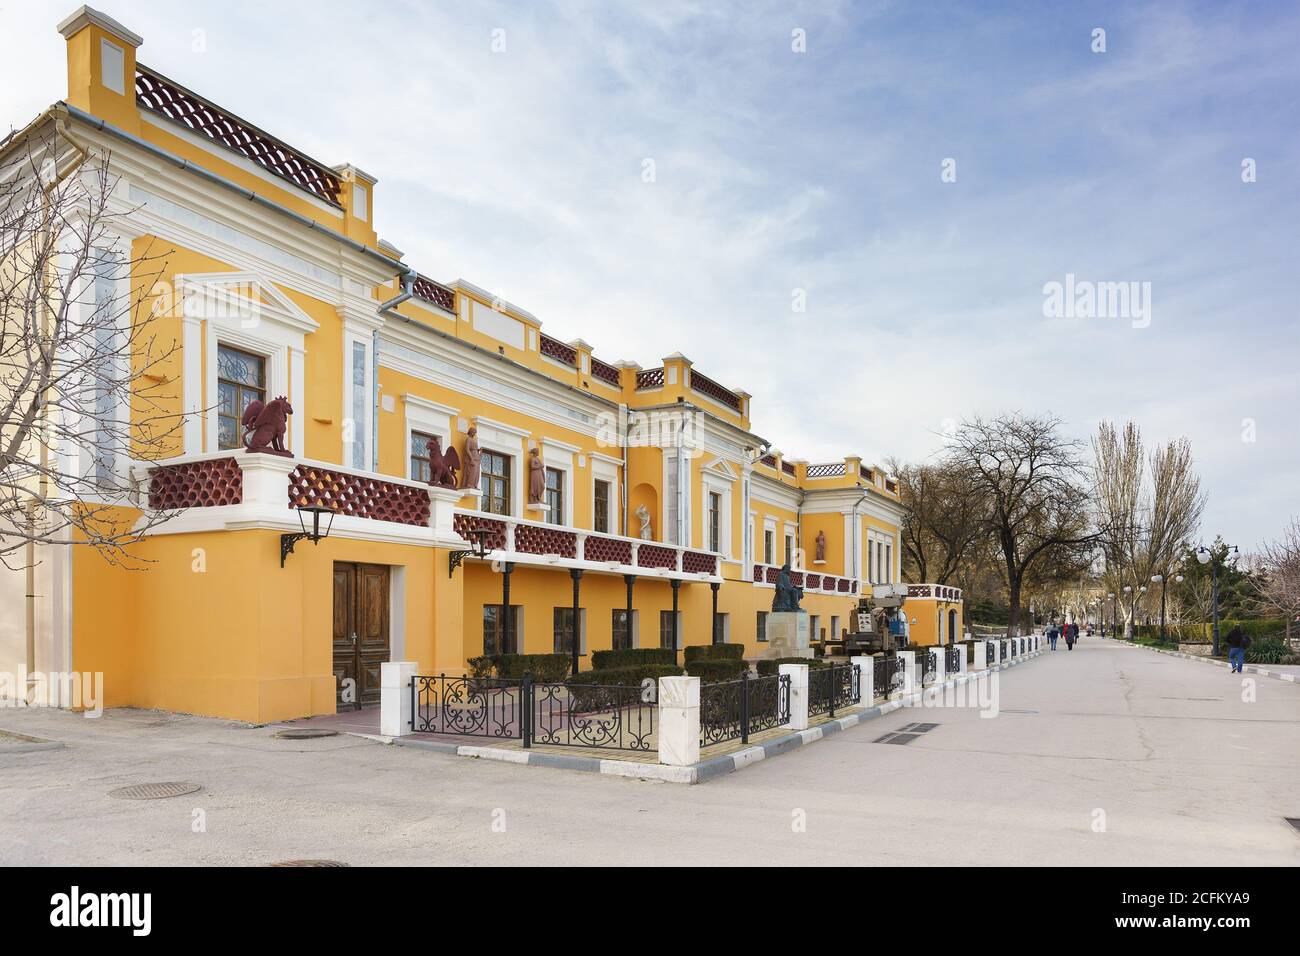 Feodosia, Crimée, Russie - 08 mars 2019: Ivan Konstantinovich Aivazovsky Galerie d'art Feodosia - Musée de la peinture marine, situé sur la même Avenu Banque D'Images